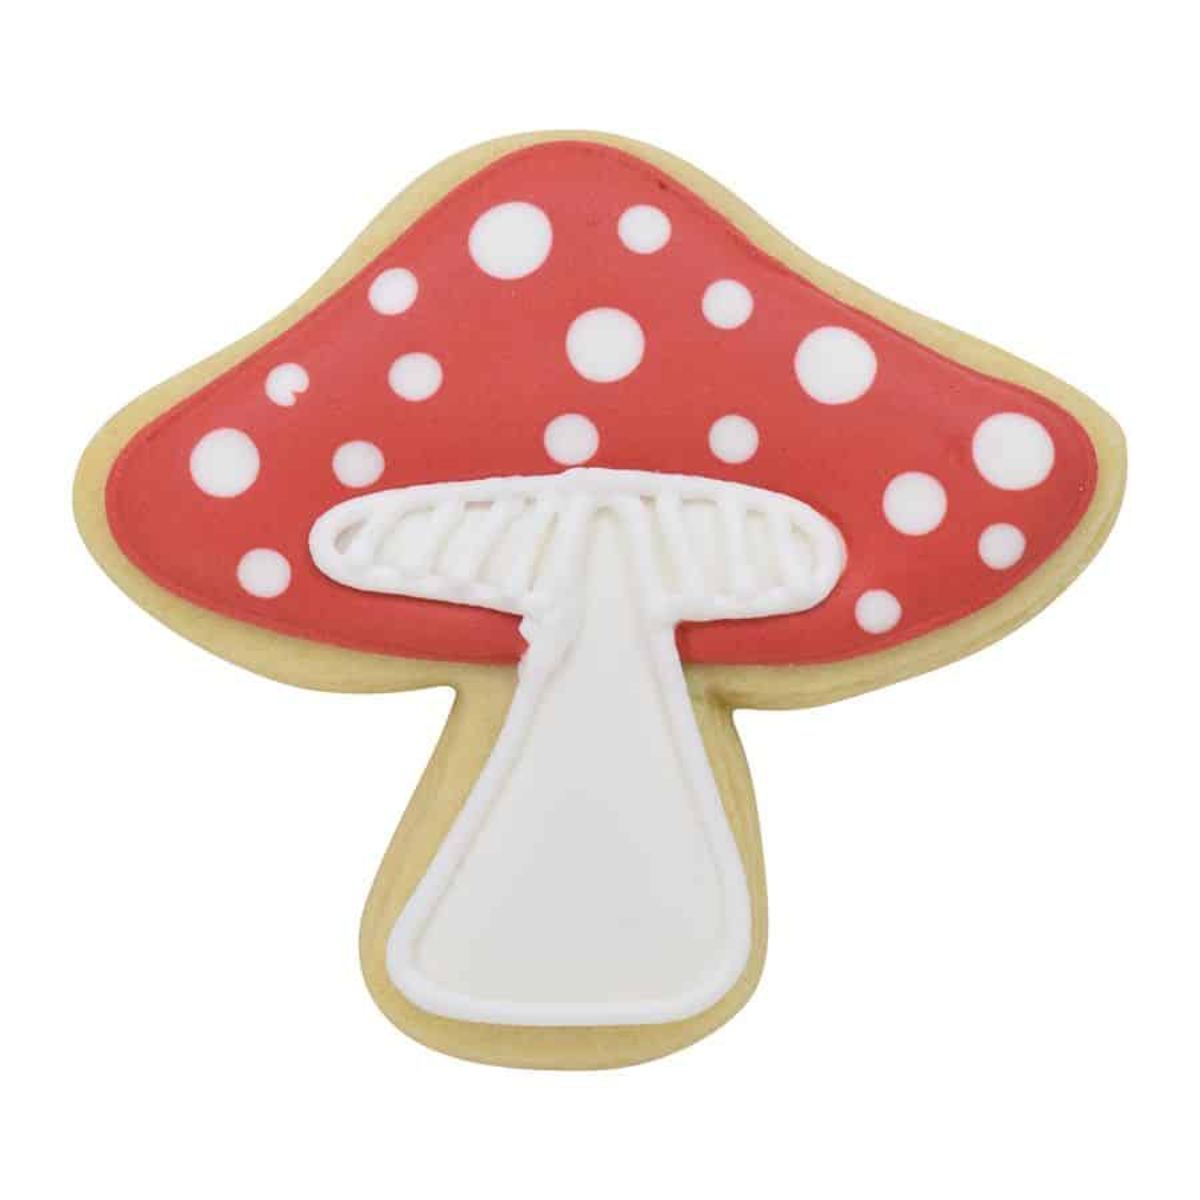 R&M Mushroom Cookie Cutter 3.75